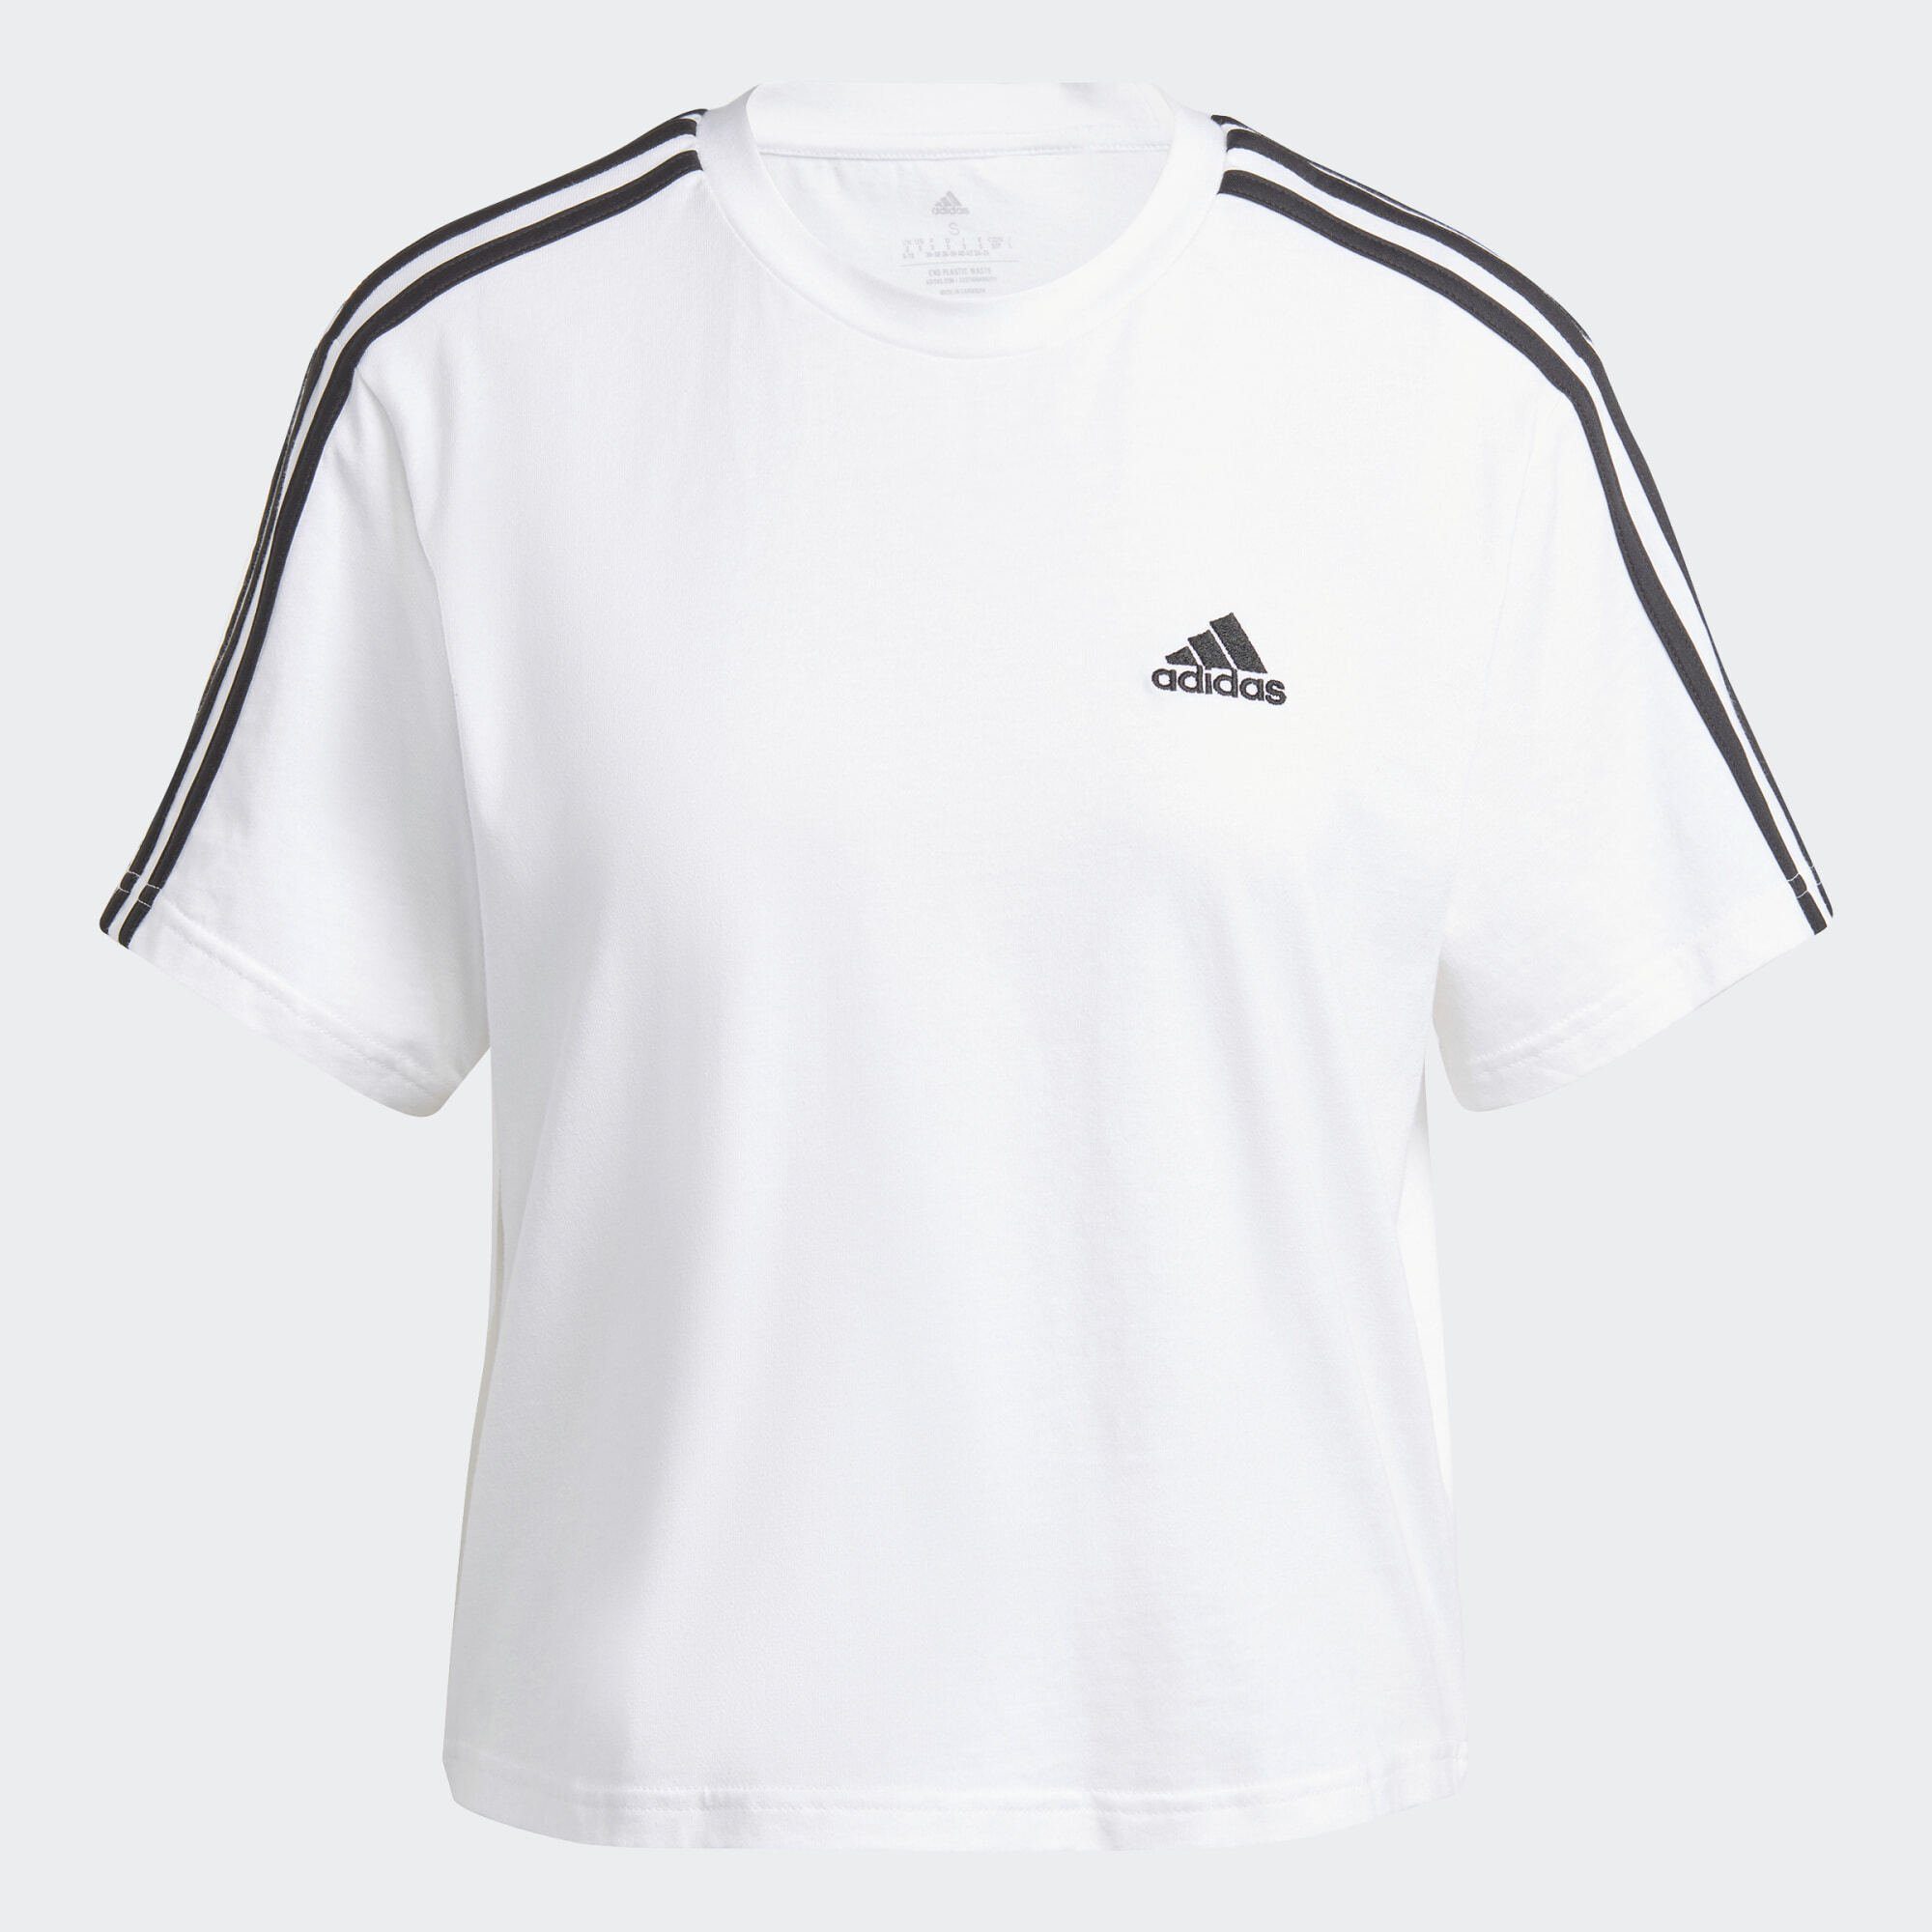 White 3-STREIFEN adidas ESSENTIALS CROP-TOP SINGLE / T-Shirt Black Sportswear JERSEY